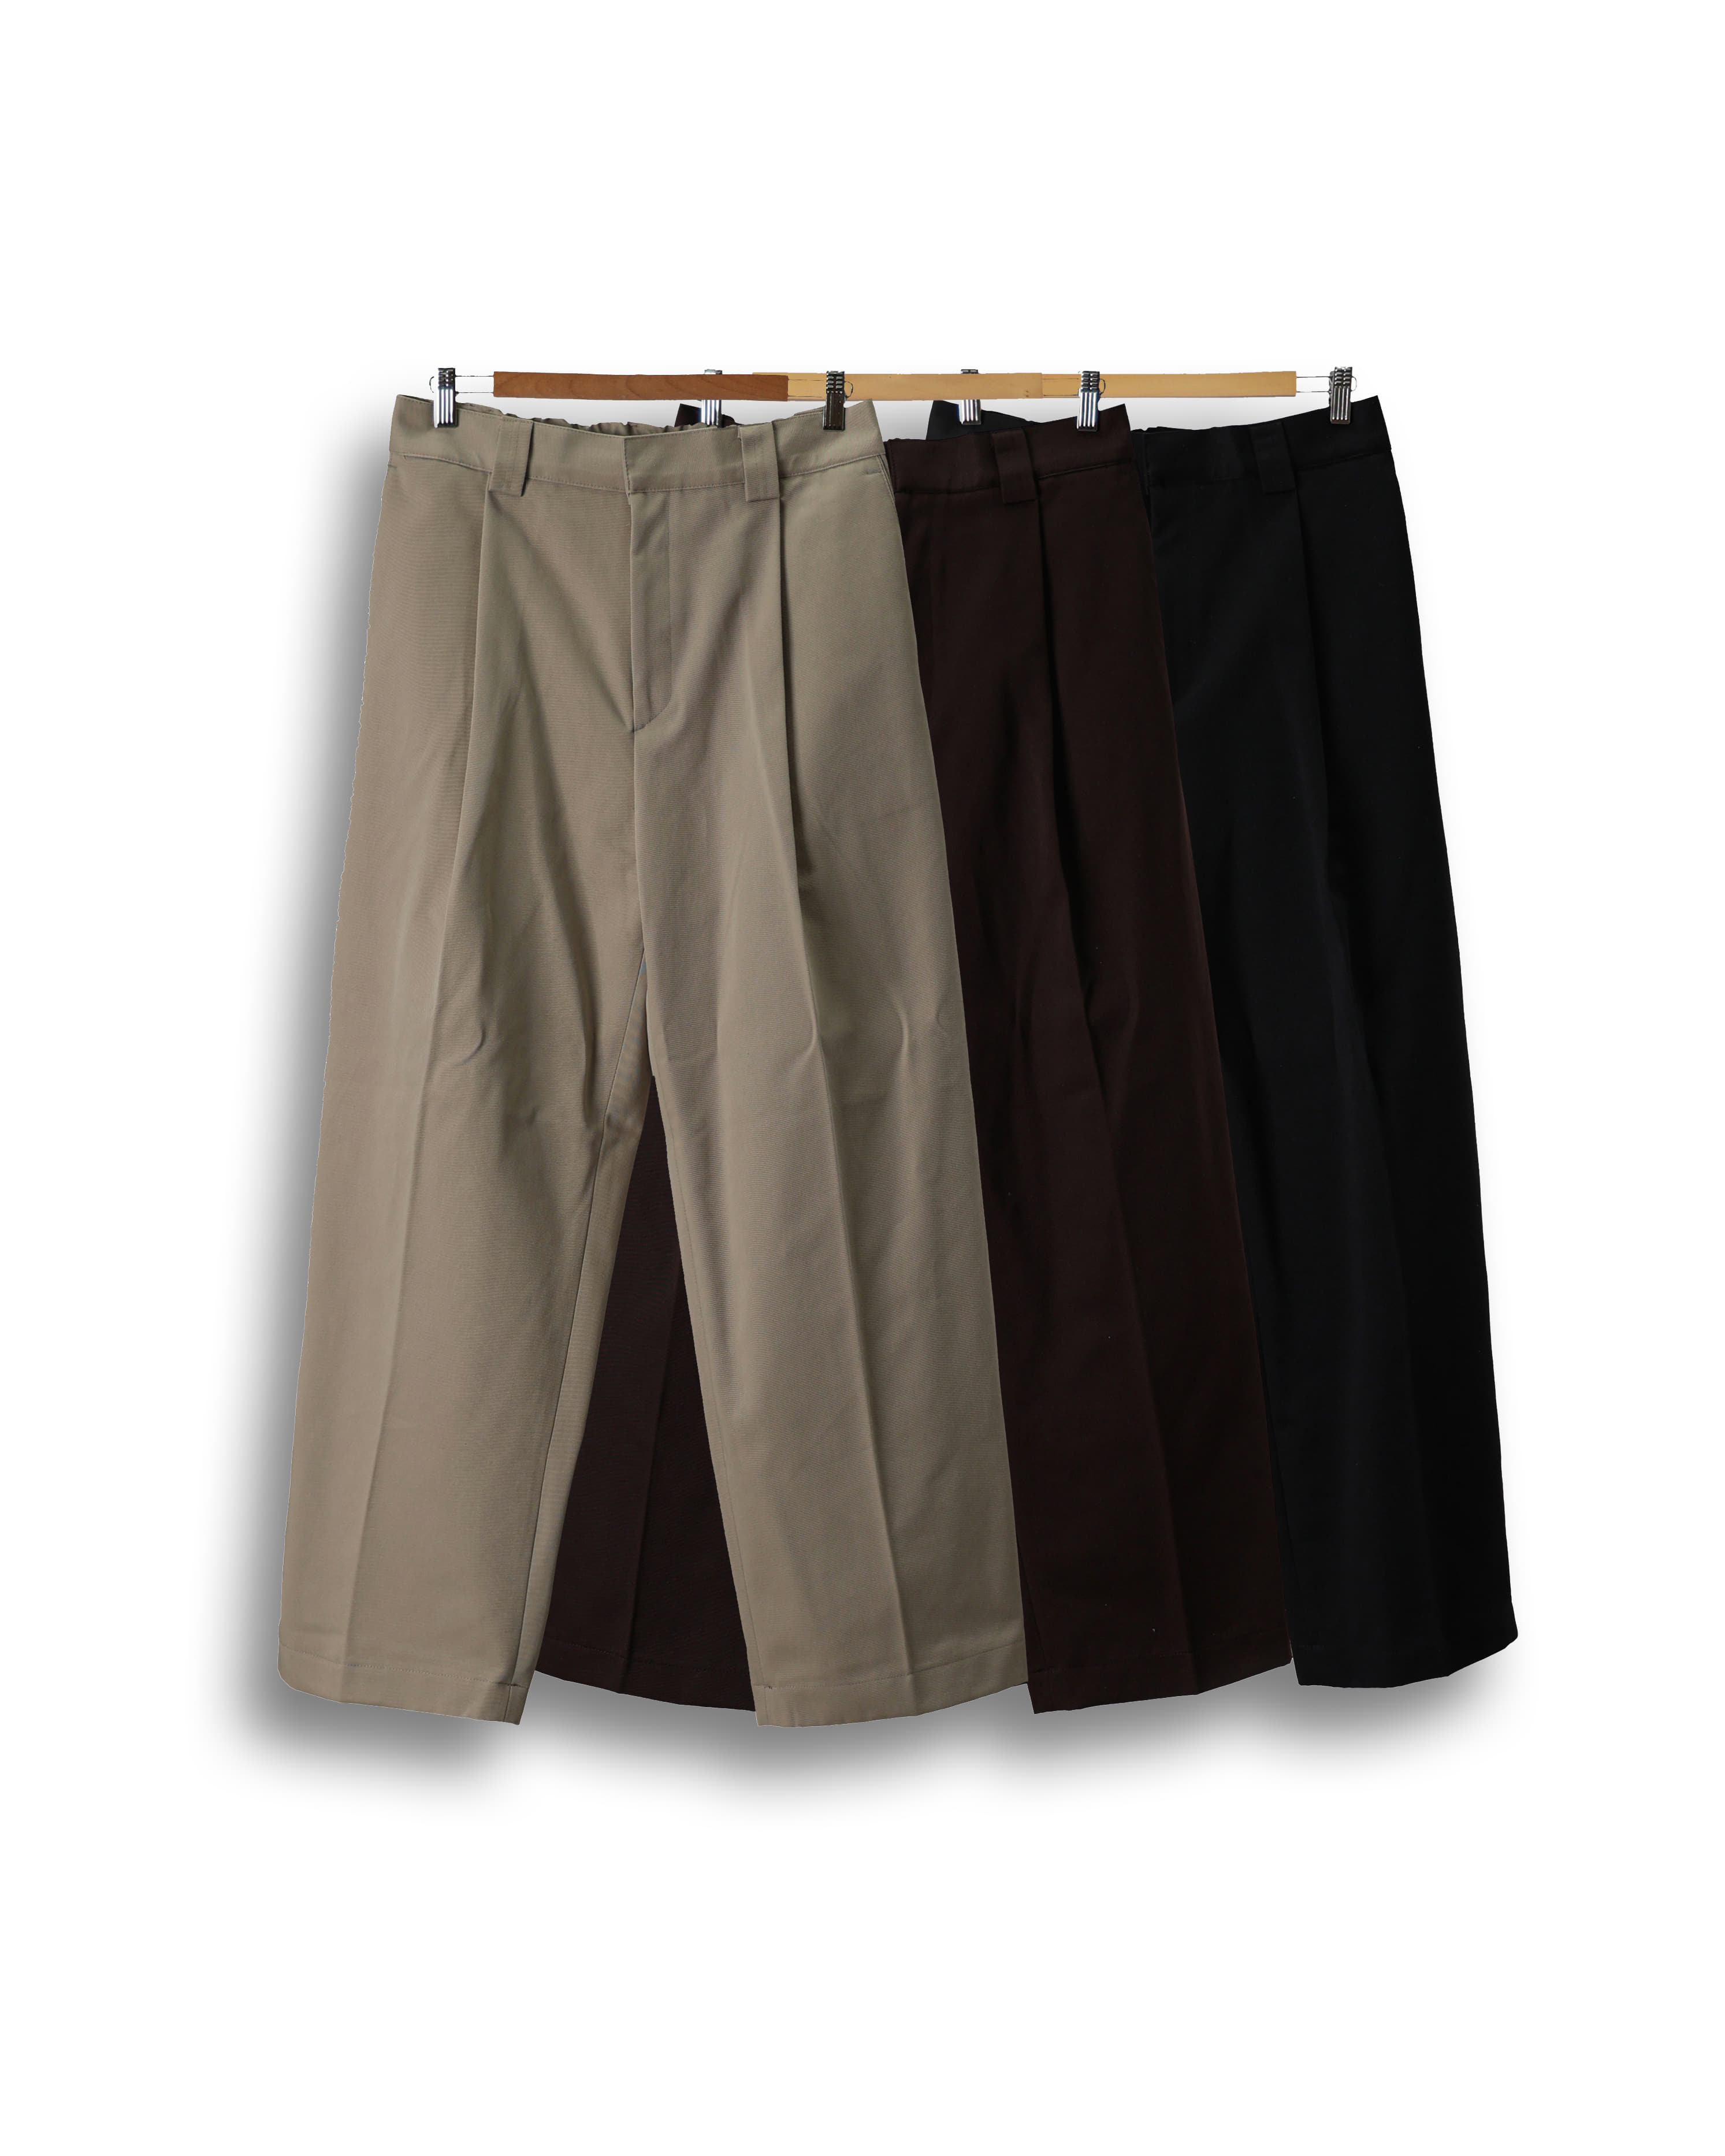 FREAKS Density Wide Daily Pants (Black/Brown/Beige)